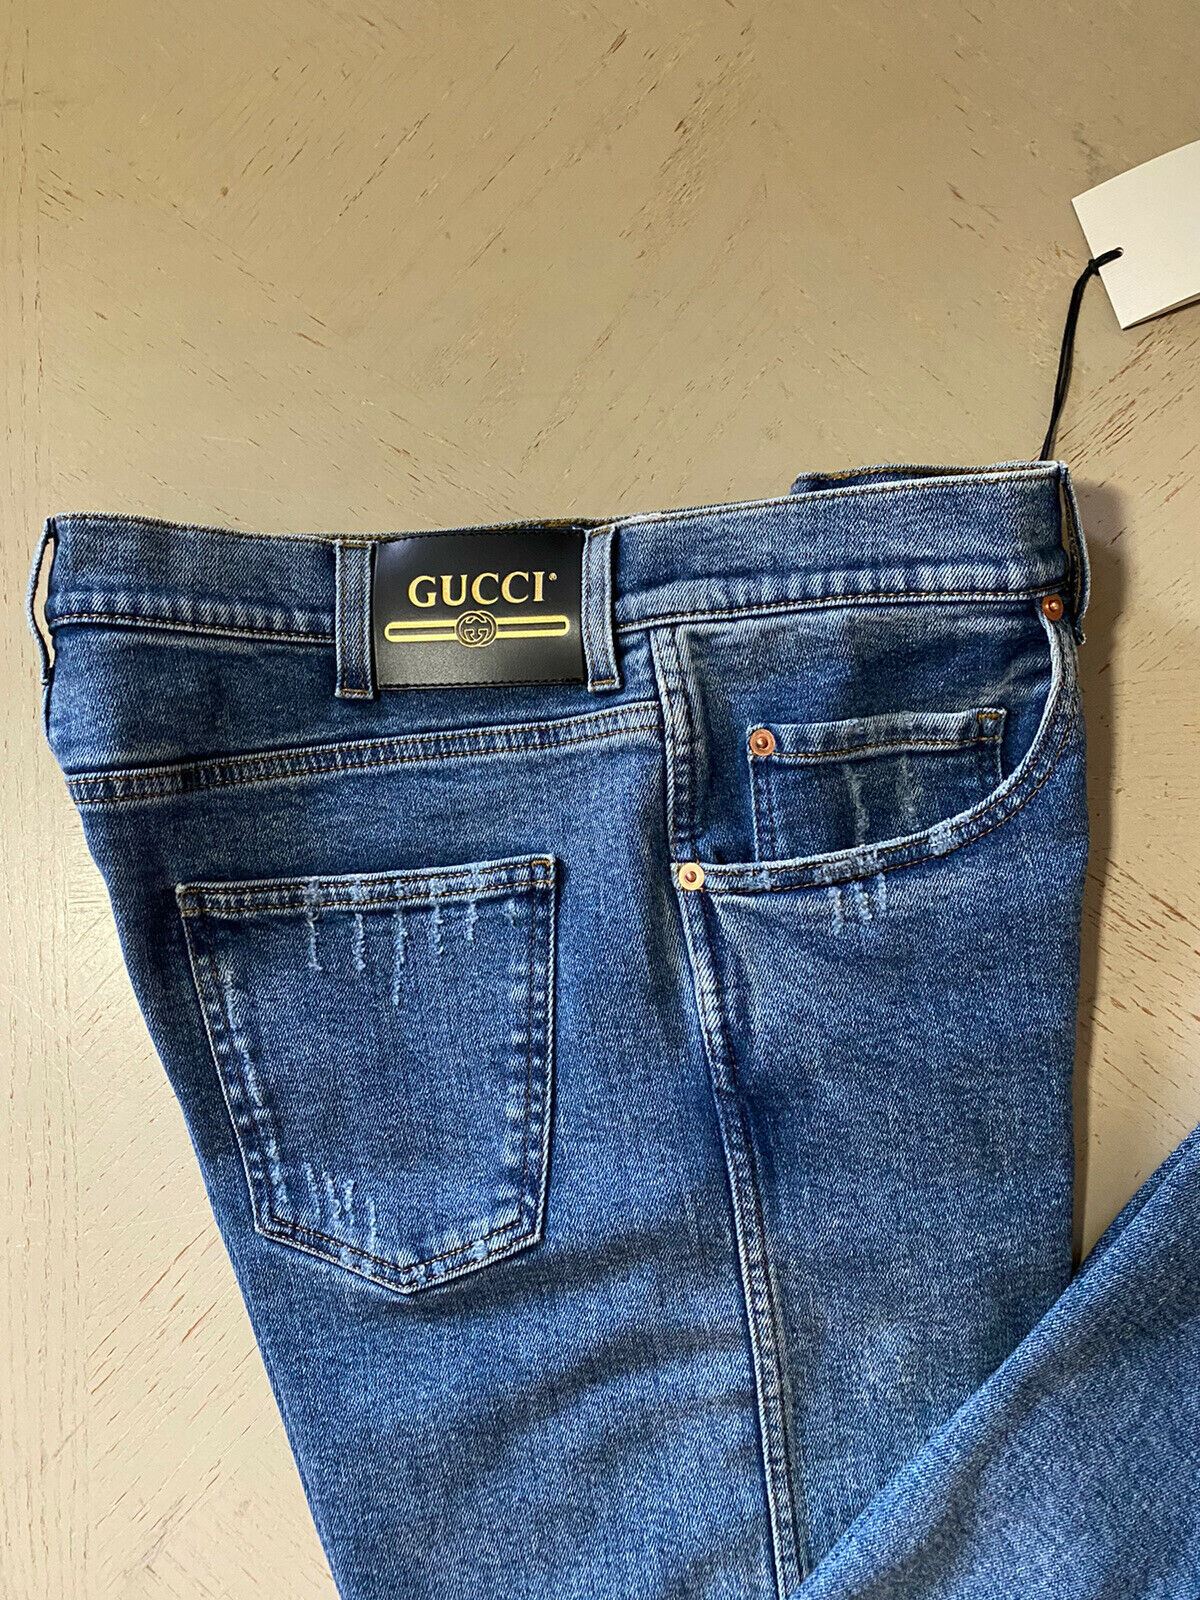 NWT $1200 Мужские джинсы Gucci Slim Fit Blue 36 США (52 евро) Италия